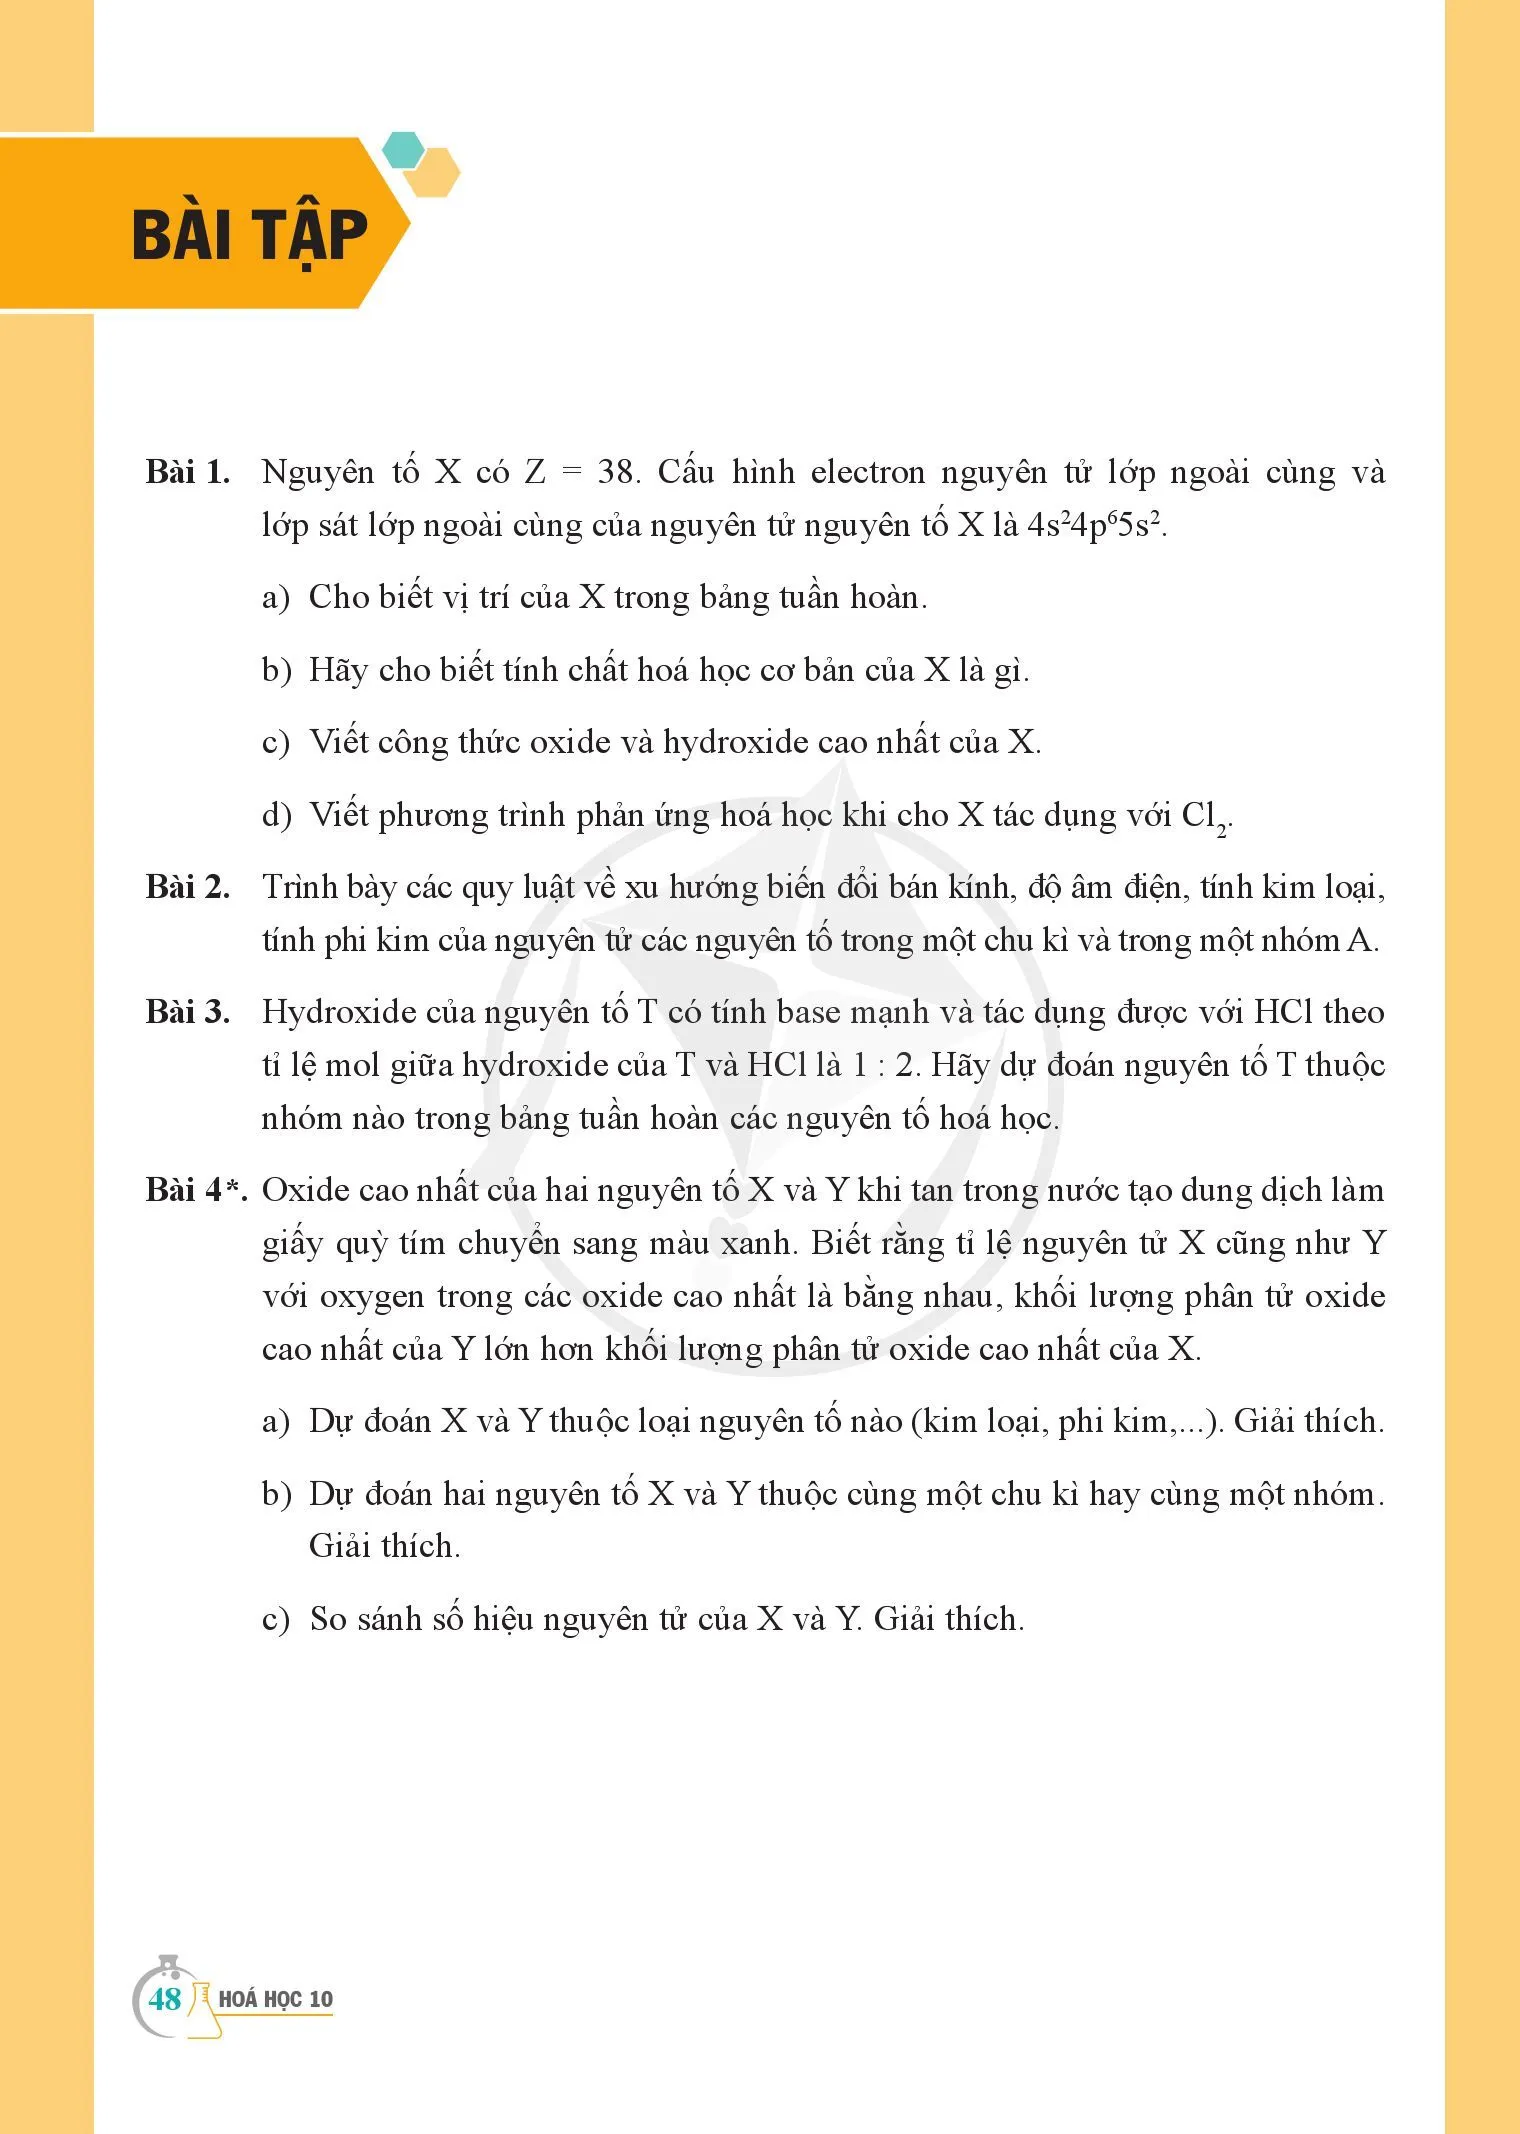 Bài 8. Định luật tuần hoàn và ý nghĩa của bảng tuần hoàn các nguyên tố hoá học